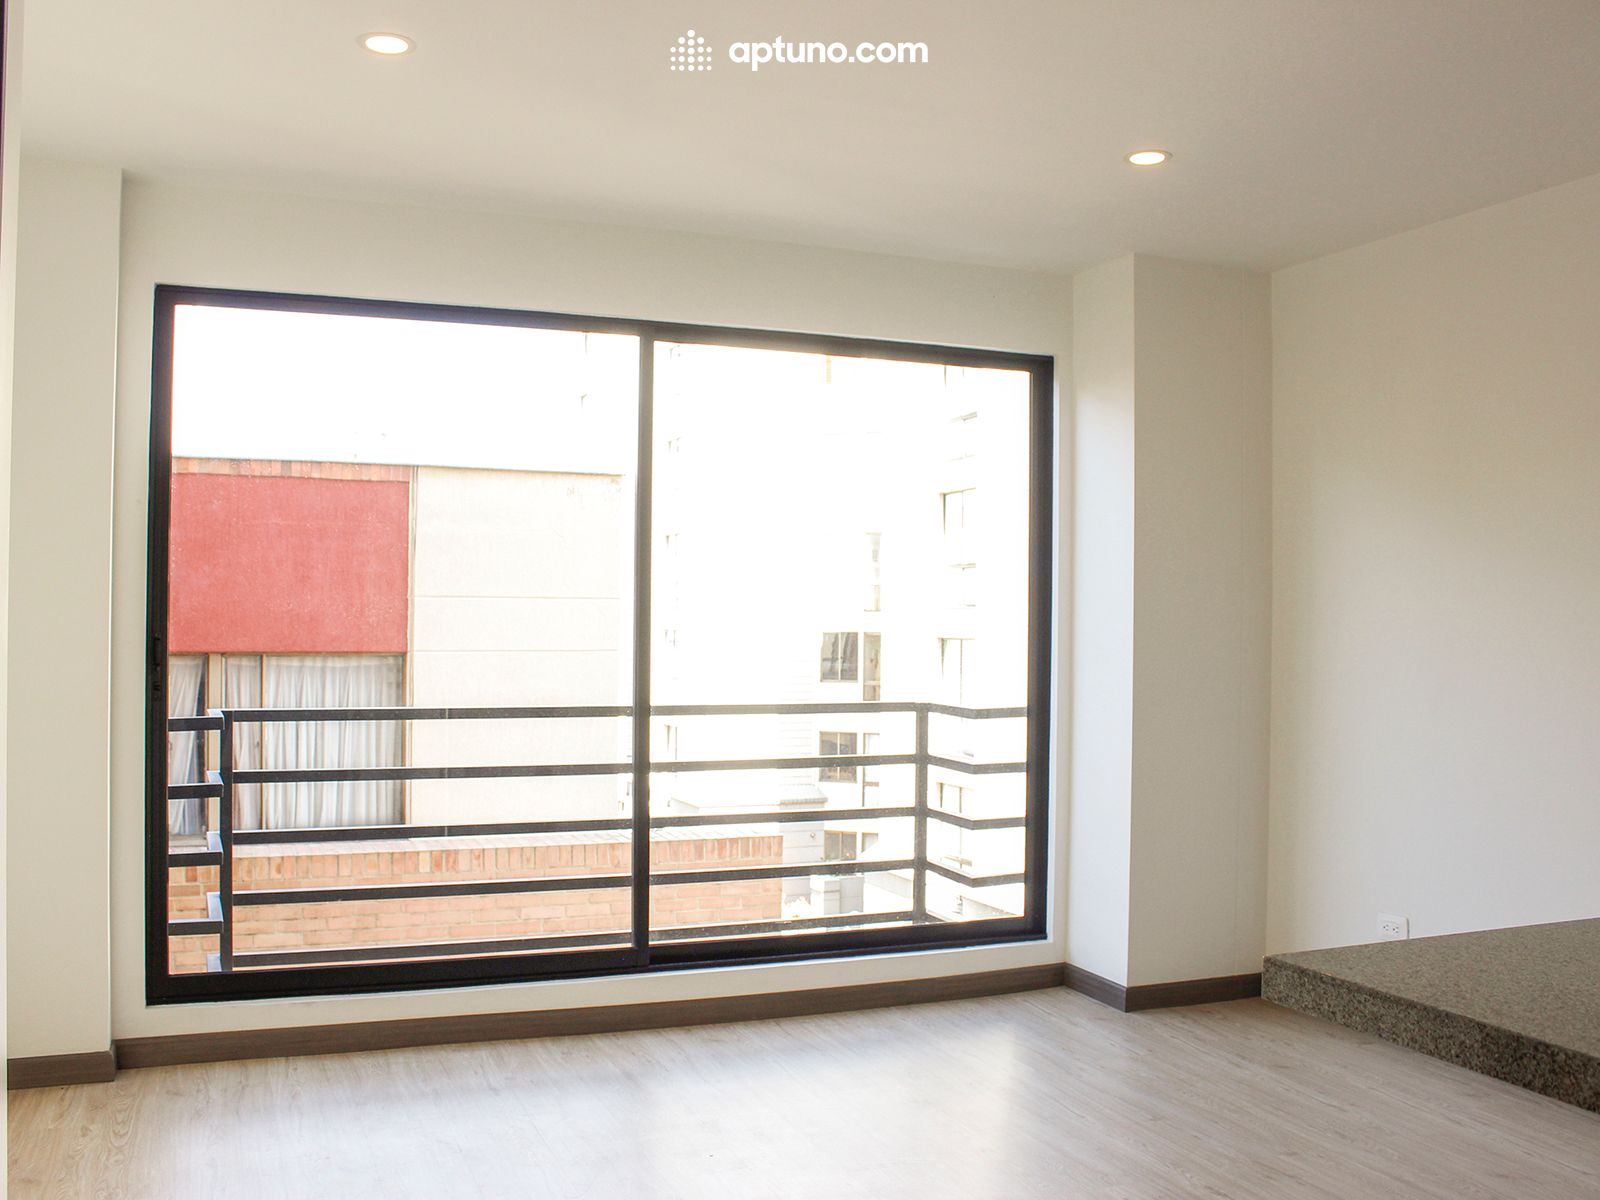 Apartamento en arriendo Caobos Salazar 56 m² - $ 2.160.000,00